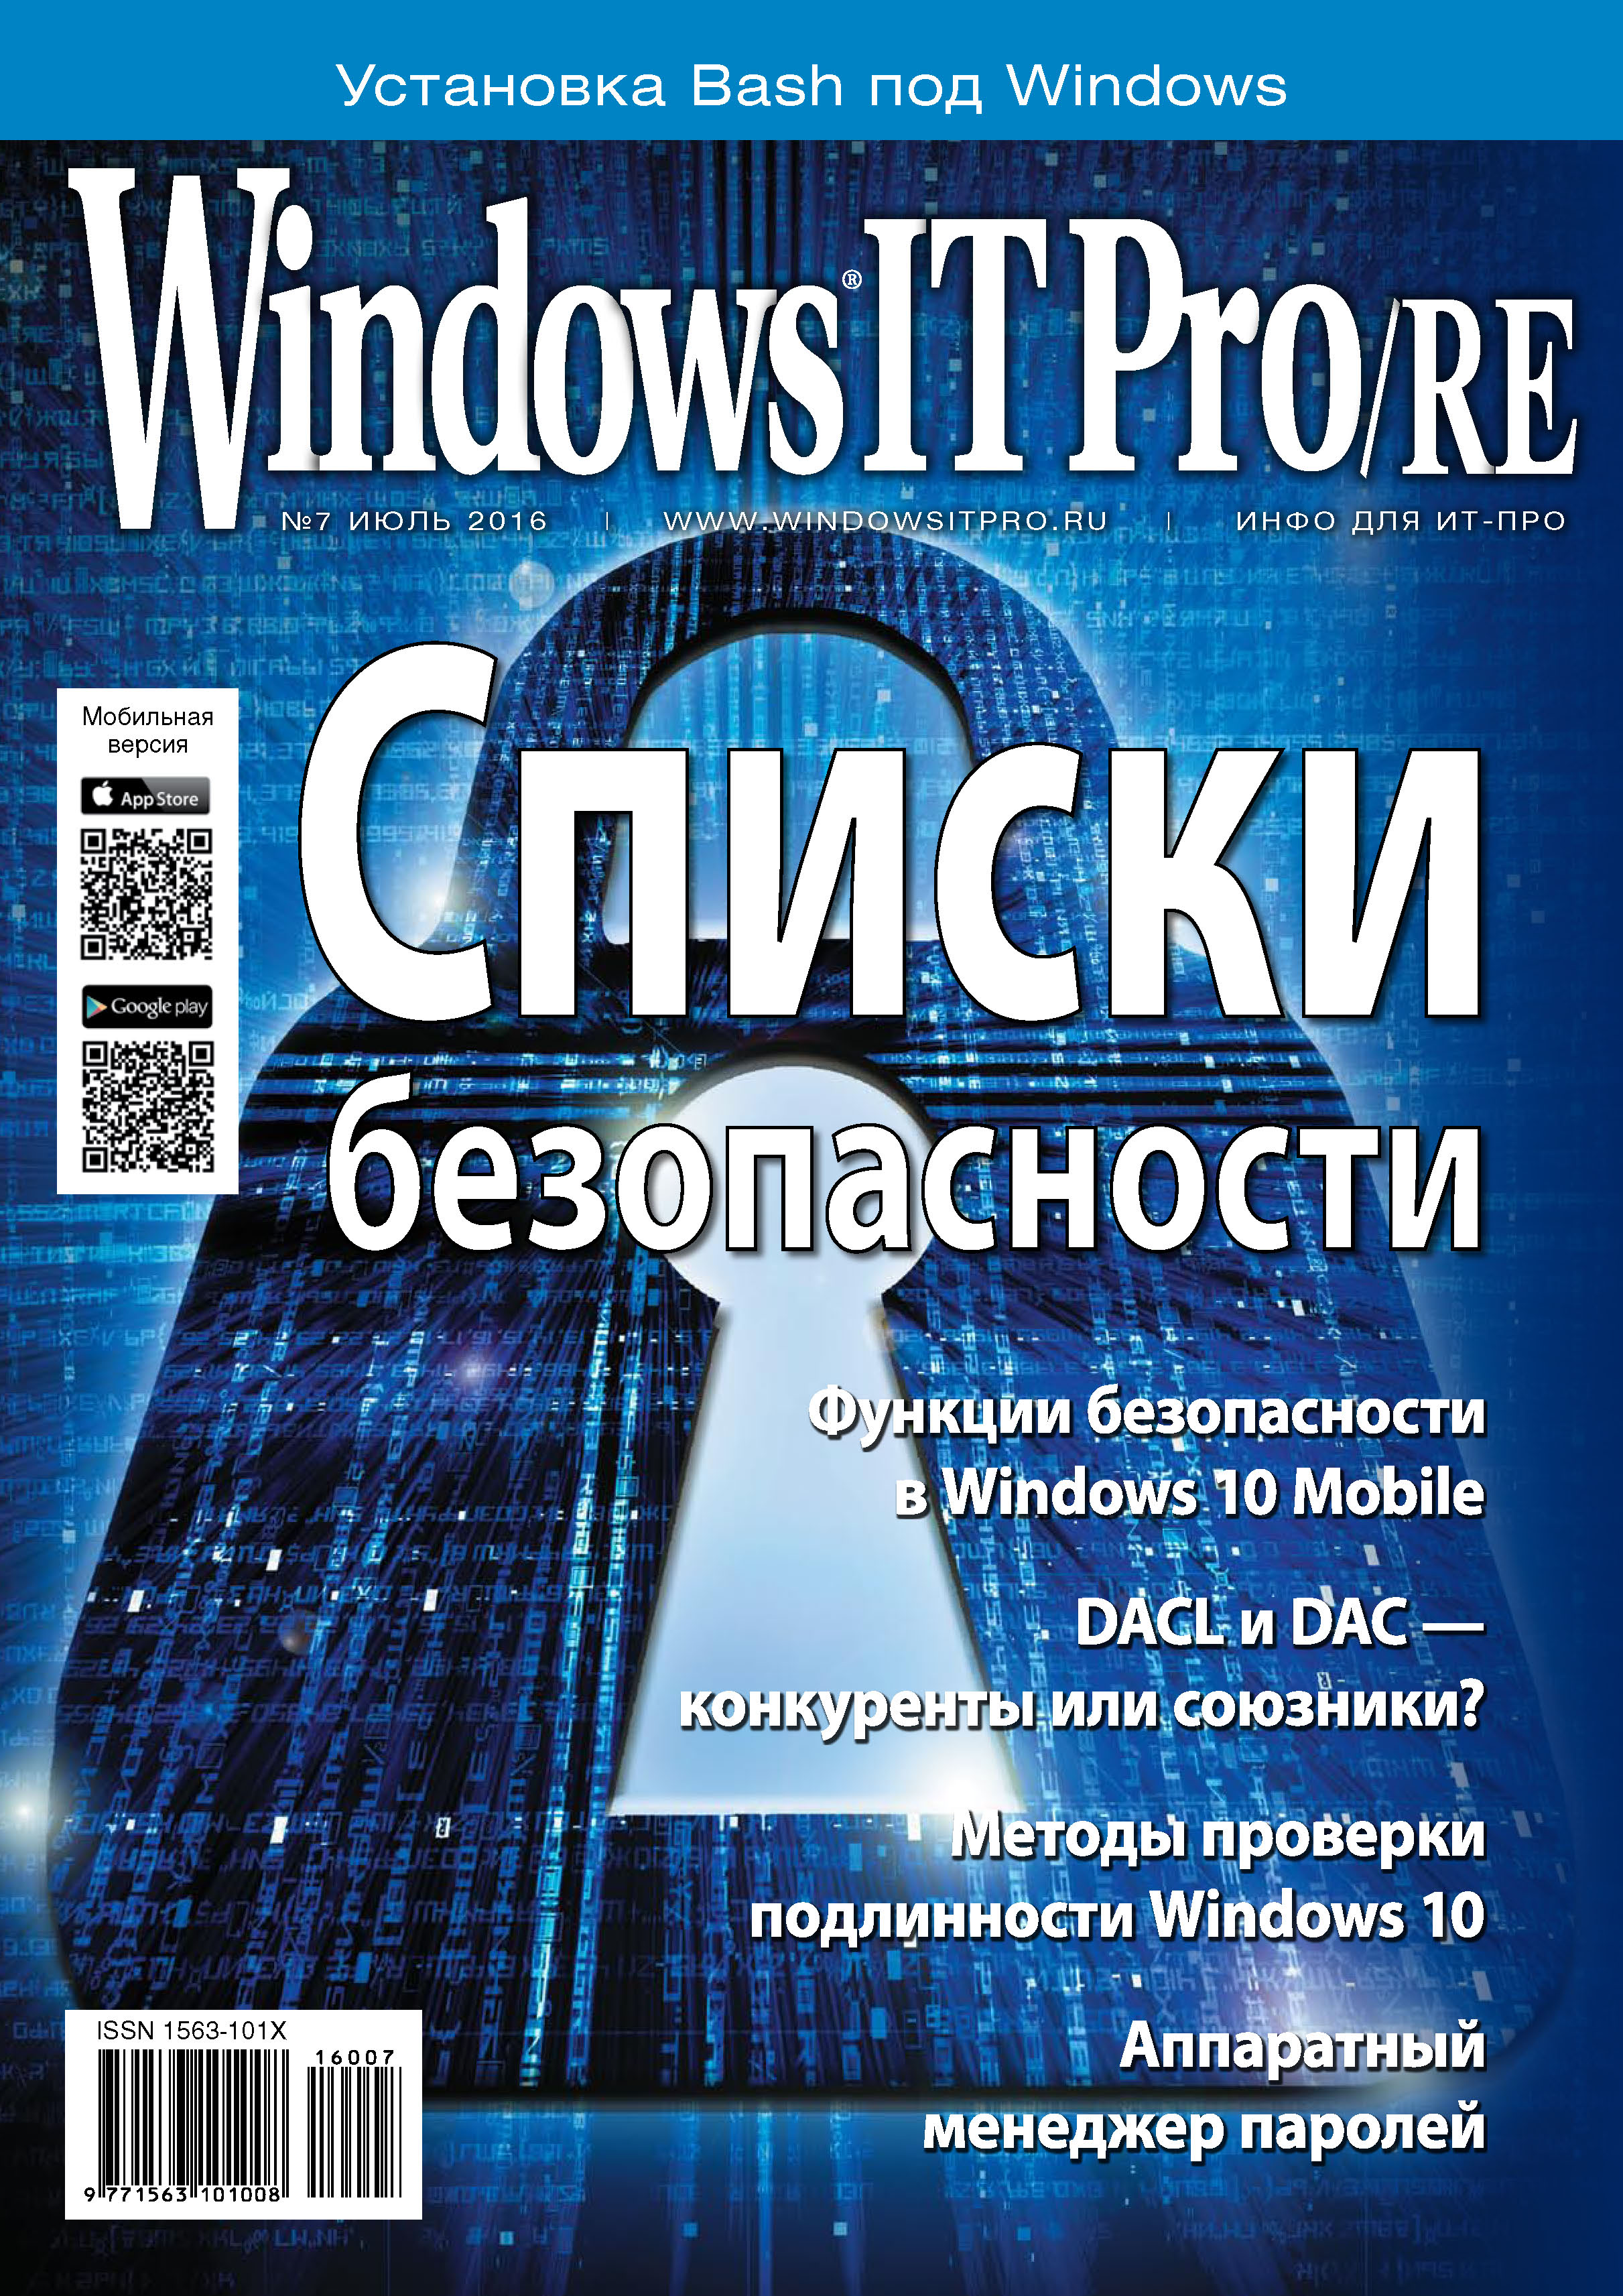 Windows IT Pro/RE№07/2016